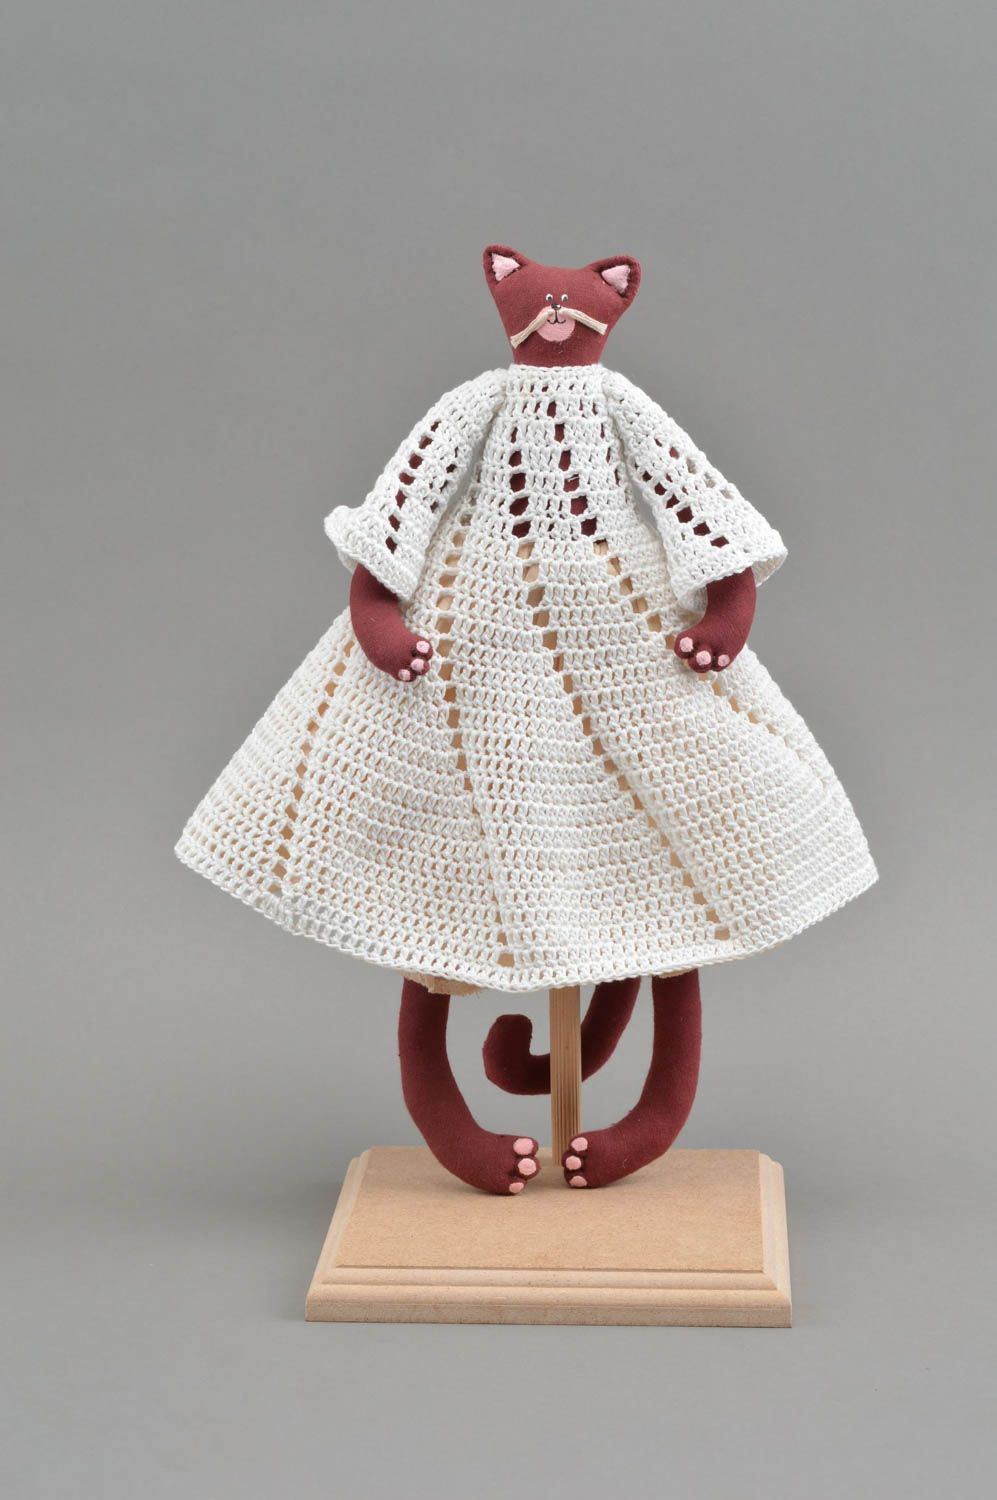 Textil Kuscheltier Katze bordeauxrot im gehäkelten Kleid klein schön handmade foto 2